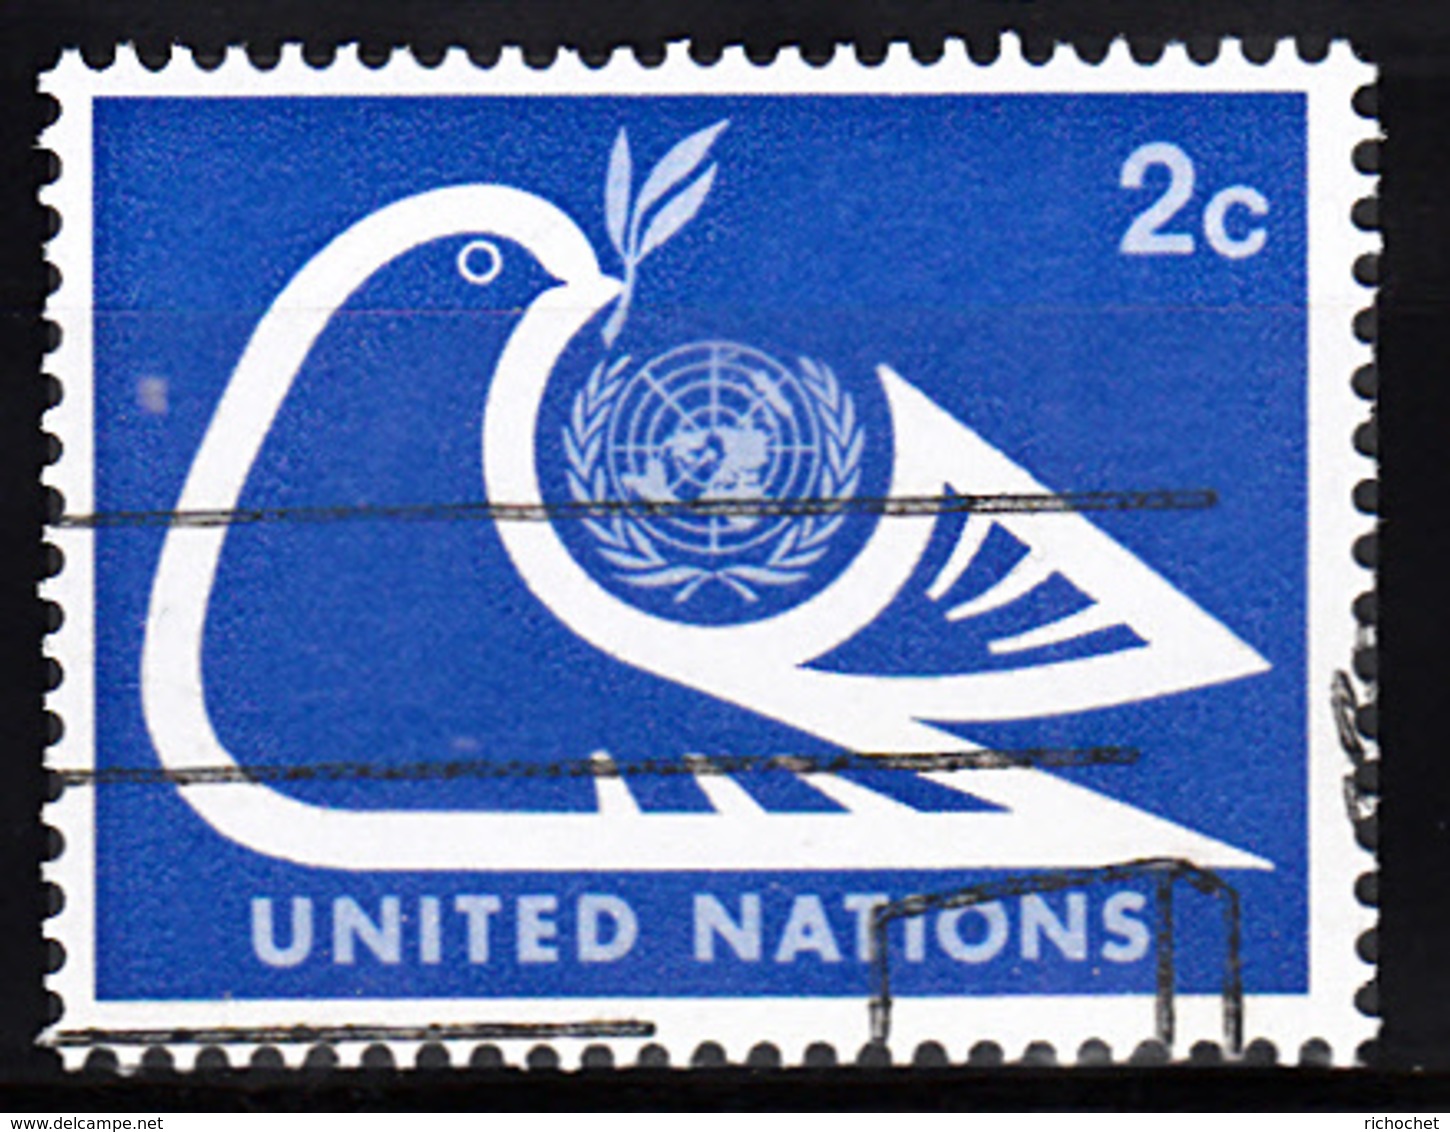 Nations Unies New York  242 à 244 ° - Usados